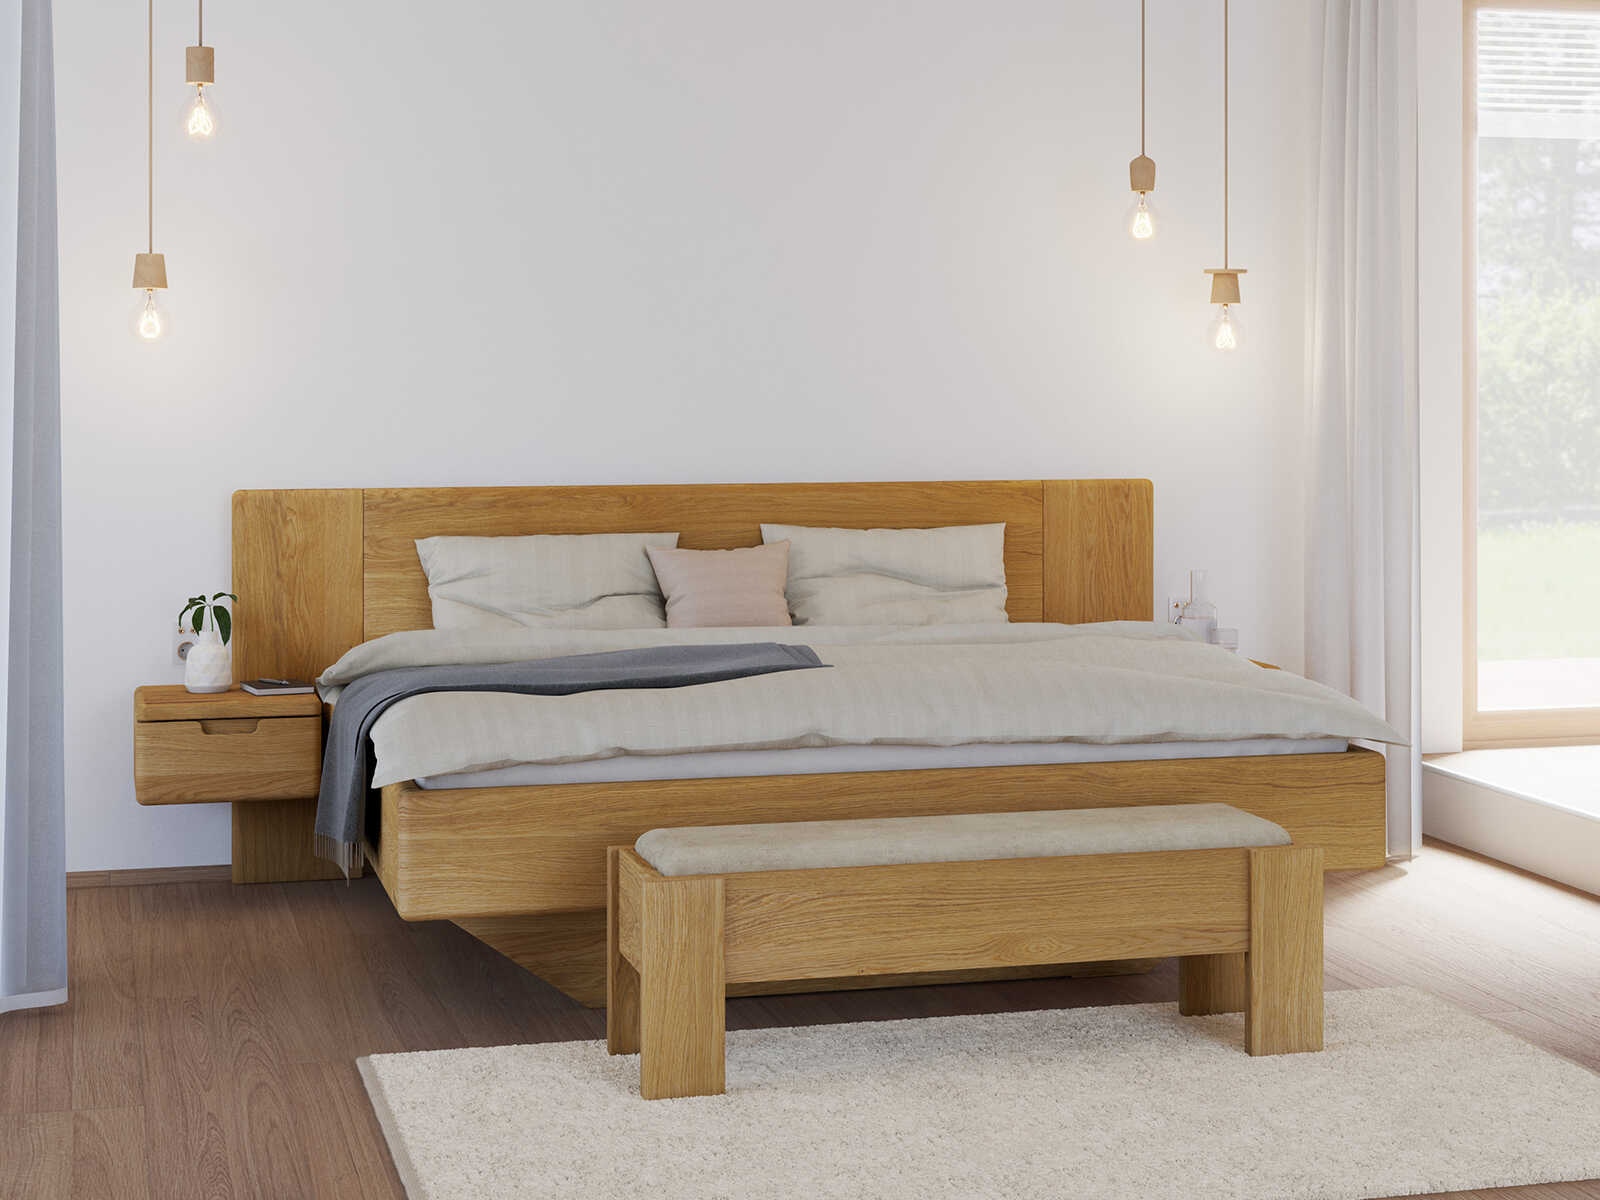 Bett „Bettina“ aus Massivholz in 180 x 200 cm, mit zwei Nachttische (40 cm breit)